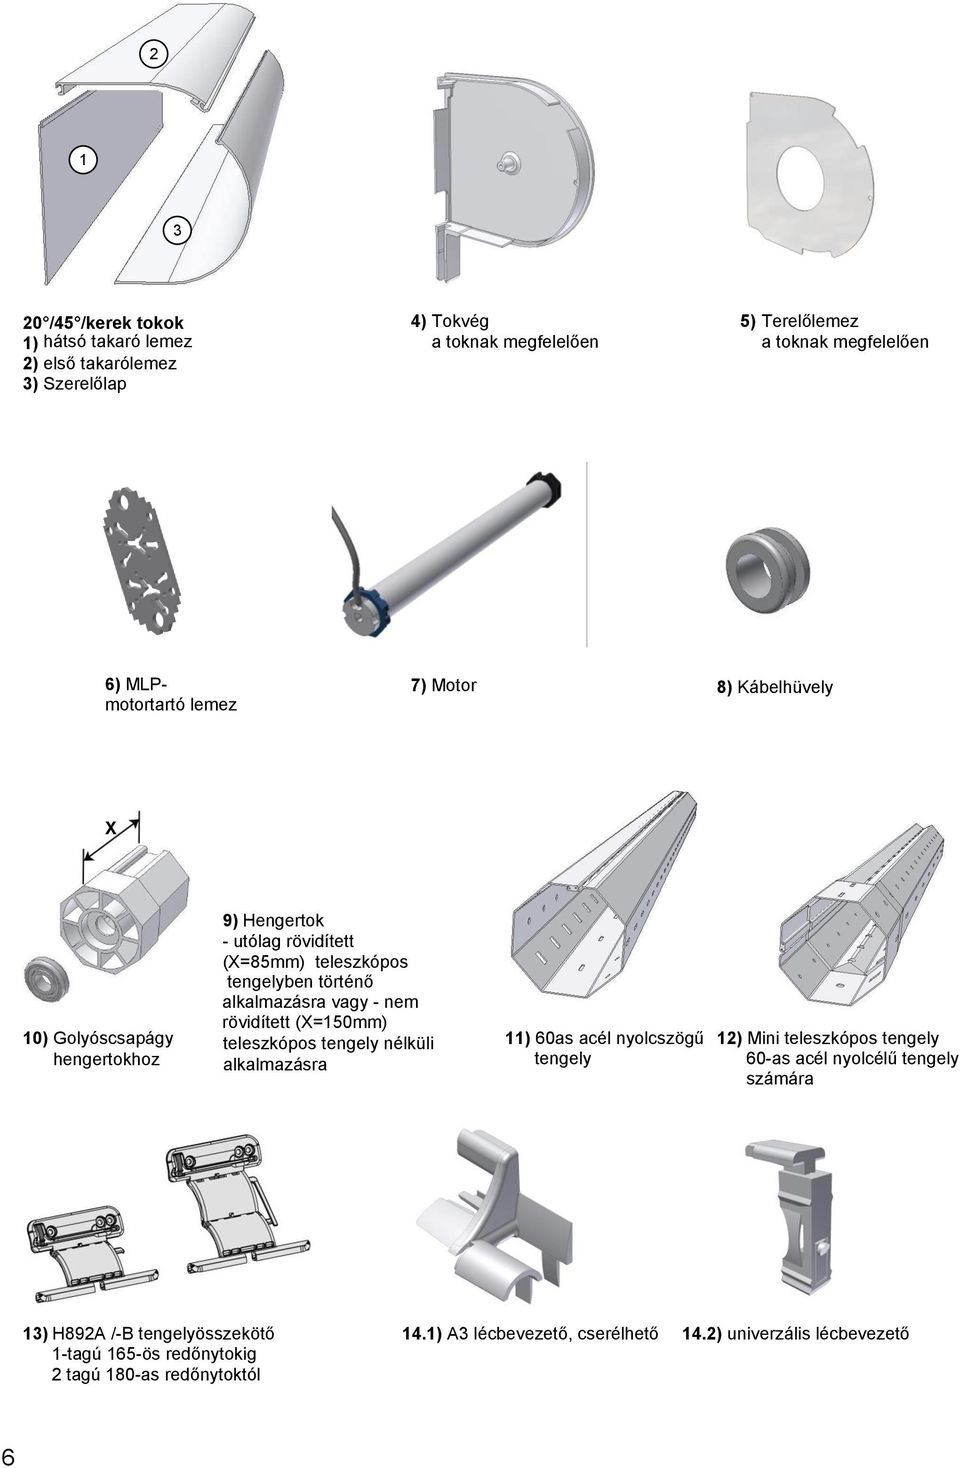 alkalmazásra vagy - nem rövidített (X=150mm) teleszkópos tengely nélküli alkalmazásra 11) 60as acél nyolcszögű tengely 12) Mini teleszkópos tengely 60-as acél